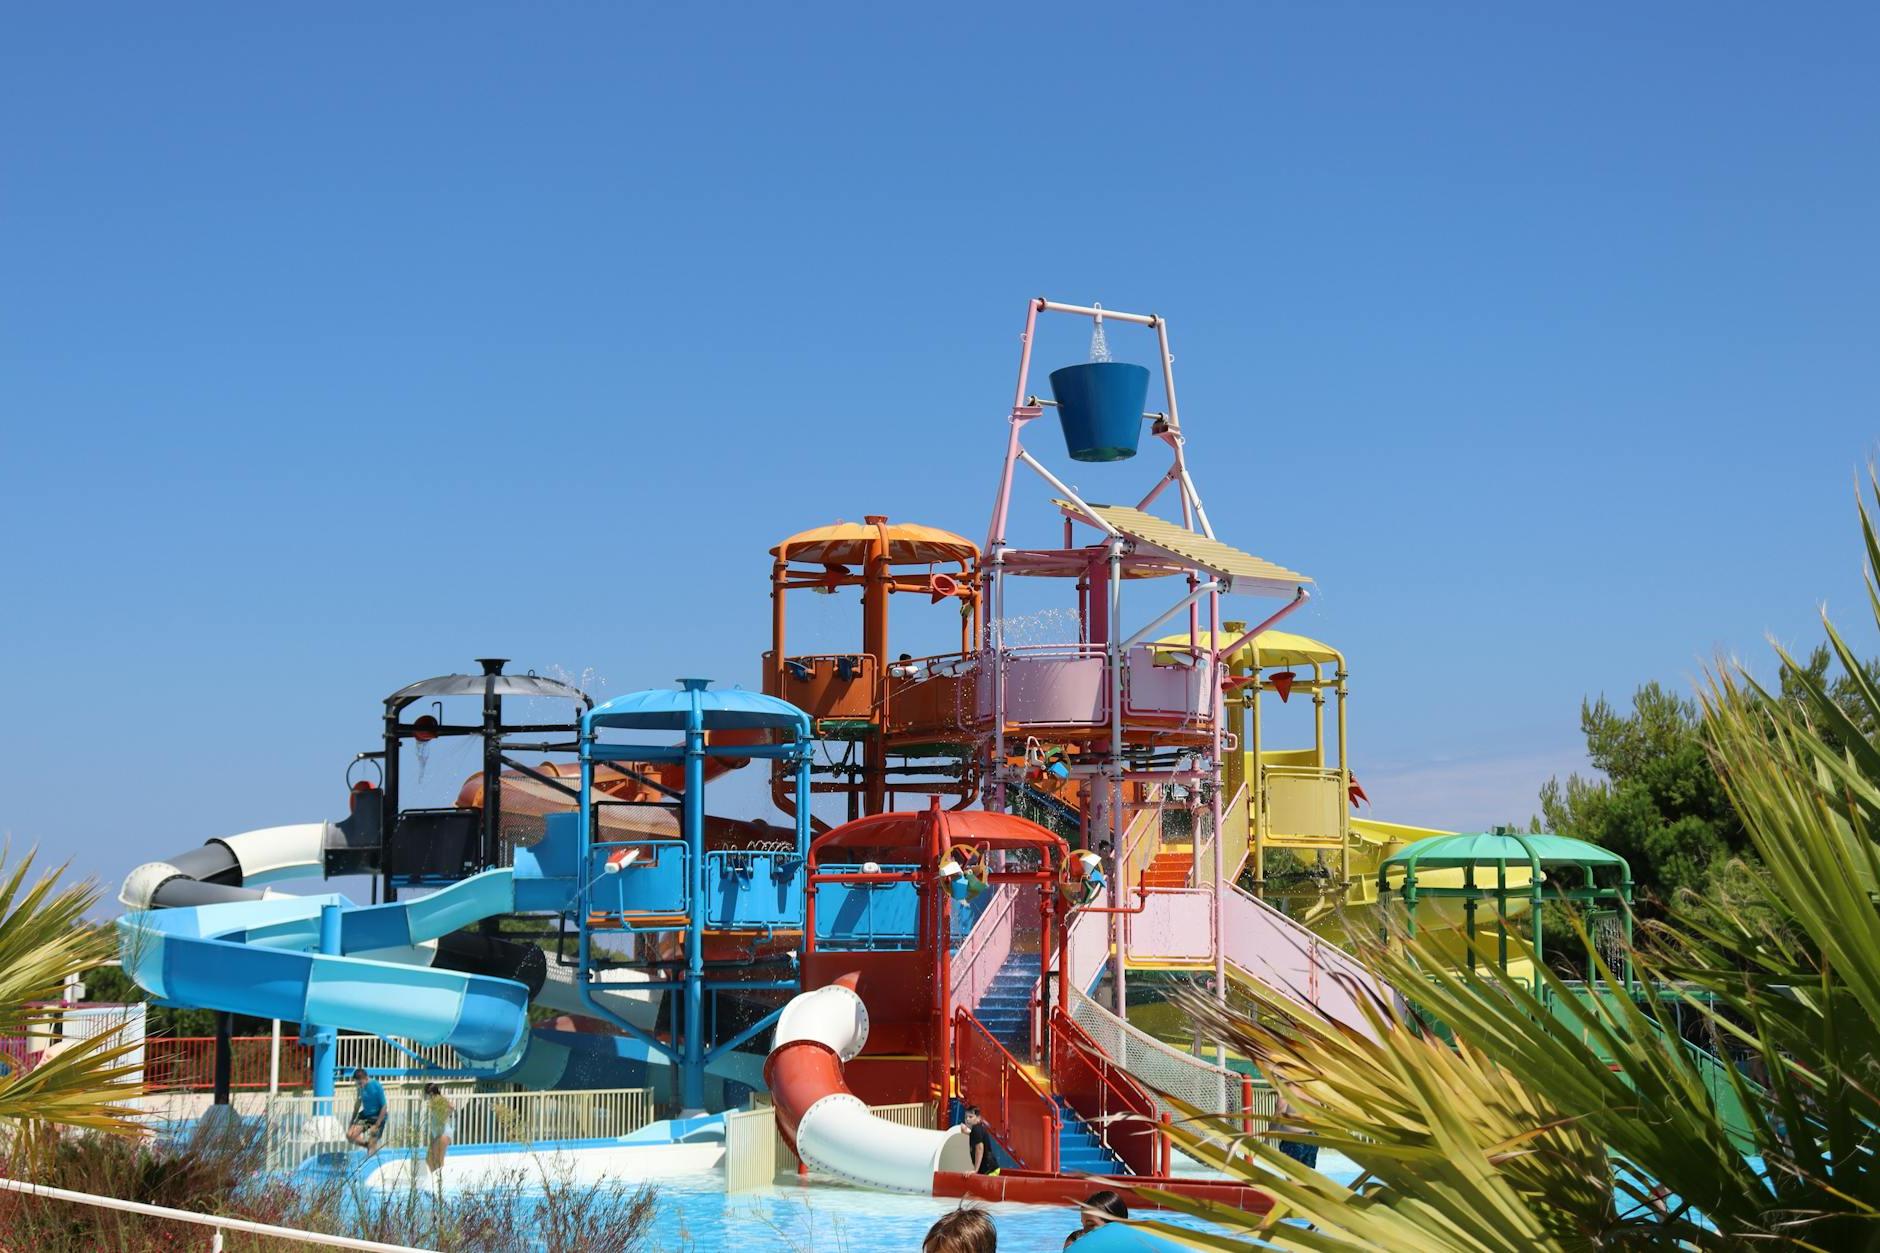 Slides in Aquapark